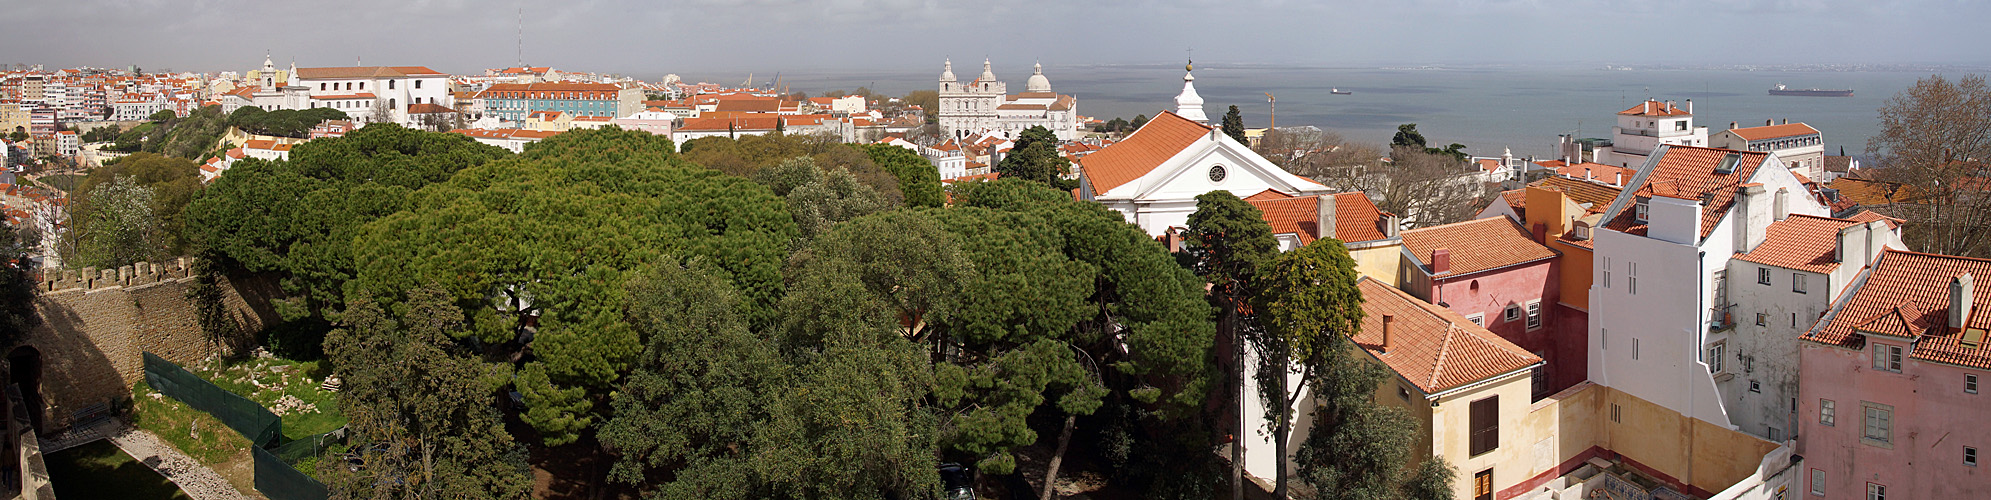 LISBONNE - photo panoramique du couvent [q]Nossa Senhora de Graça[q], du monastère de [q]Sao Vicente de Fora[q] et de l église [q]Santa Cruz do Castelo[q]